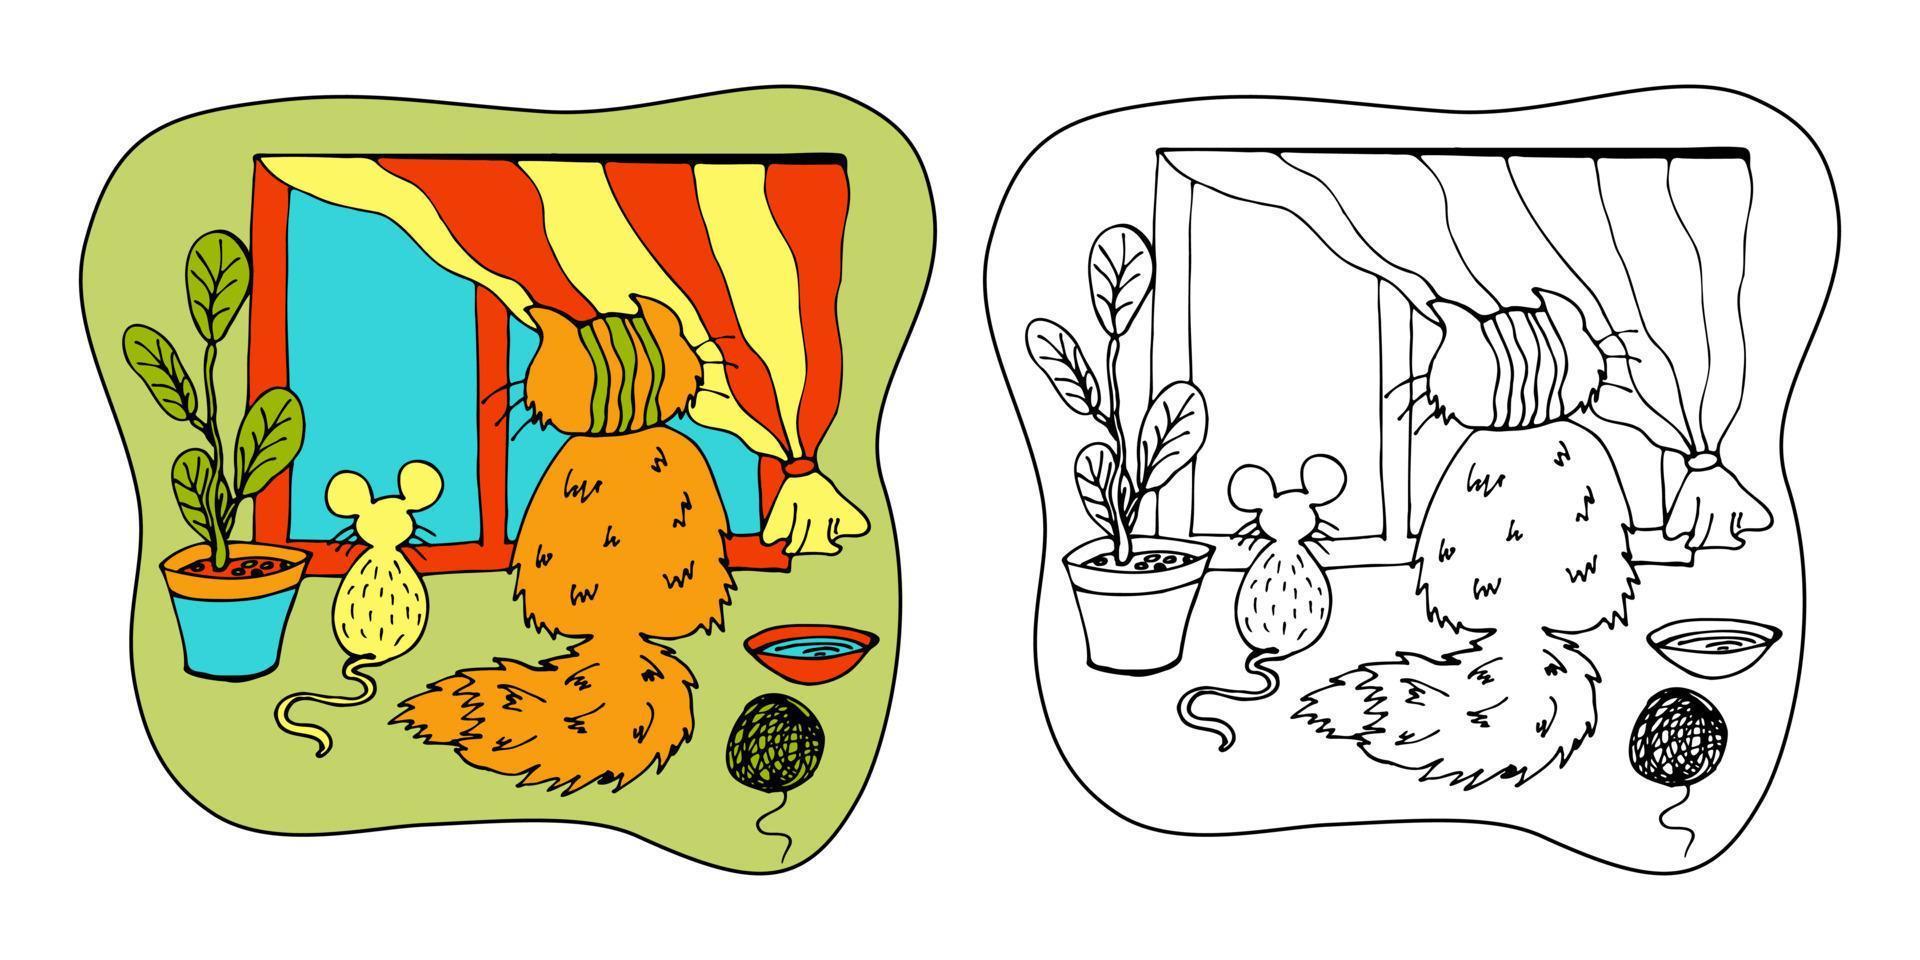 pagina del libro da colorare per bambini. simpatico gatto e topo sono seduti e guardano fuori dalla finestra. illustrazione di zentangl disegnata a mano di vettore con gli animali domestici. scarabocchio in stile cartone animato.